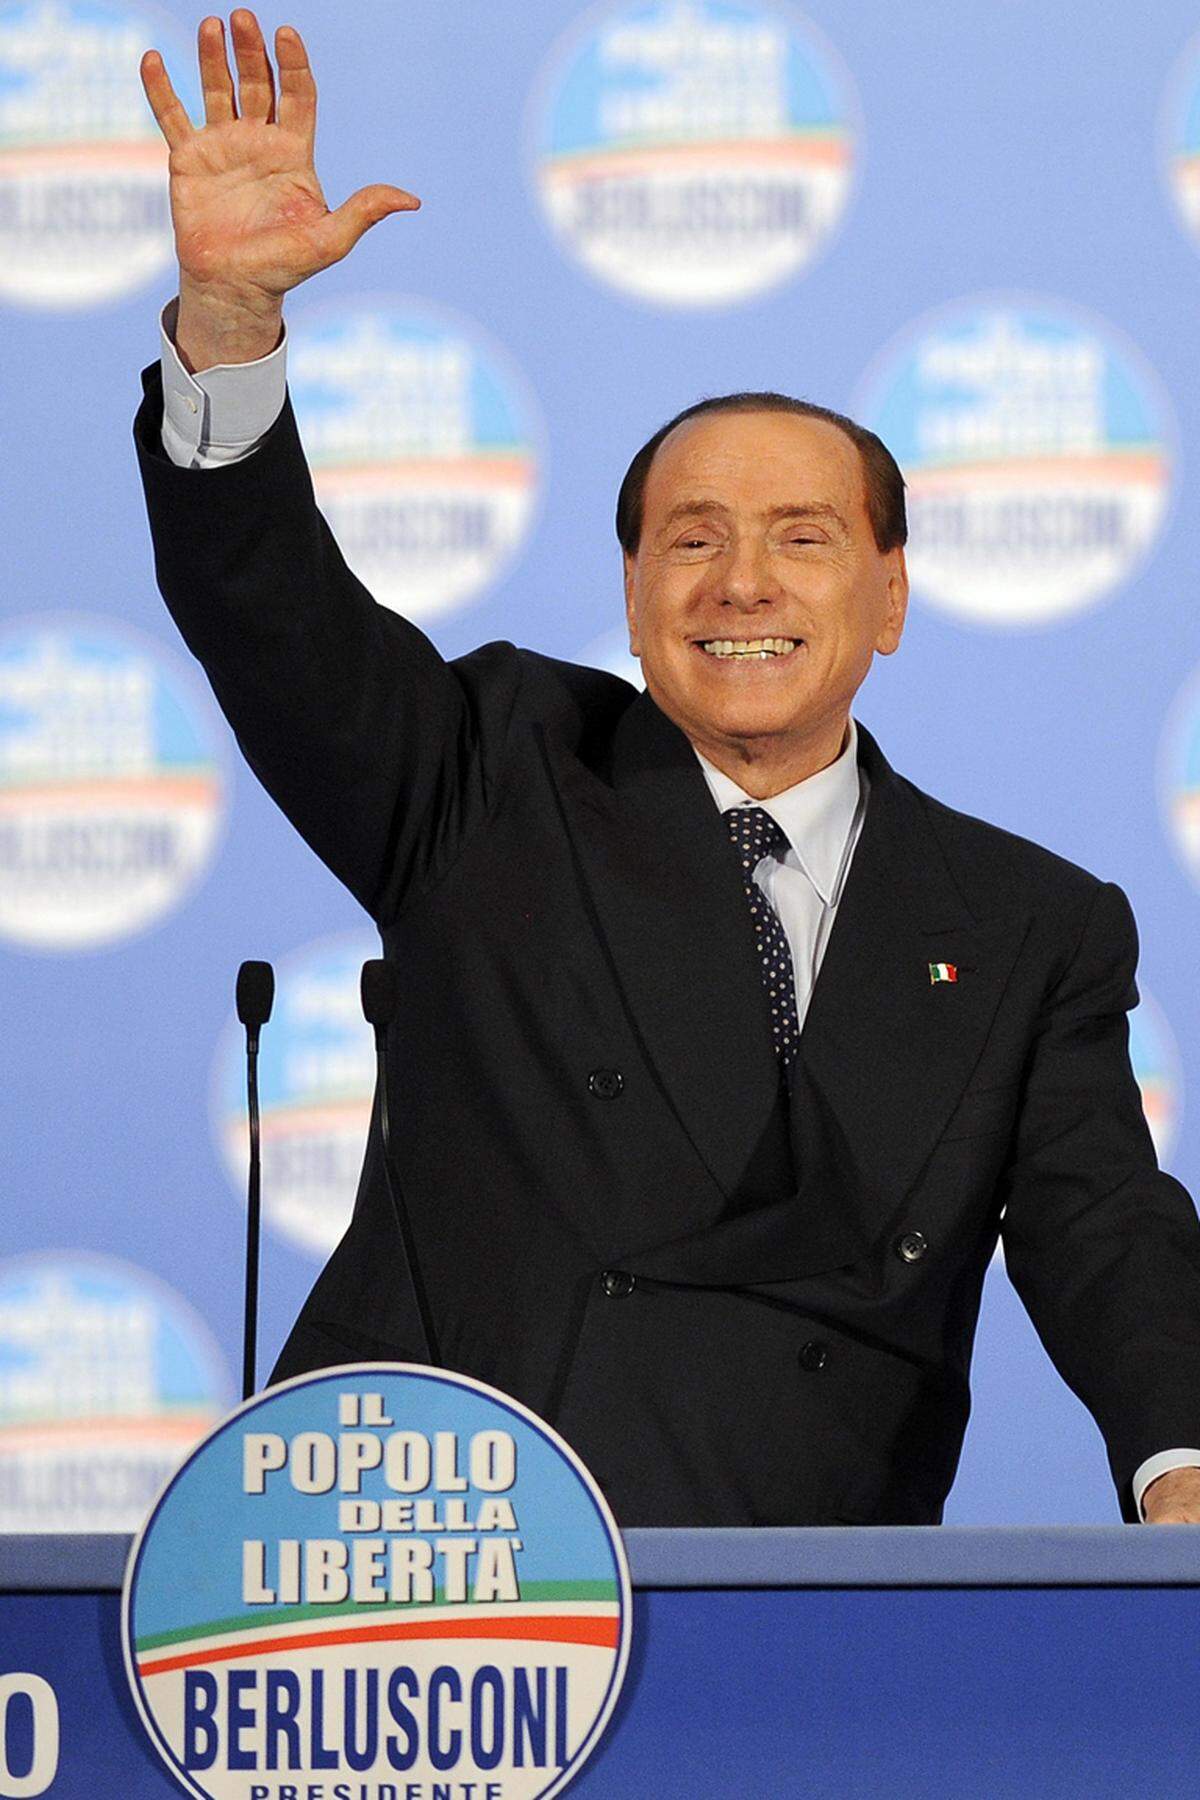 Die Mitte-Rechts-Allianz um Silvio Berlusconi schaffte unerwartete 30,7 Prozent. "Italien braucht tragfähige Regierung", kündigte Berlusconi an und gab sich im gleichen Atemzug ungewohnt kompromissbereit: Eine Einigung mit der Mitte-links-Allianz um Bersani sei nicht auszuschließen.